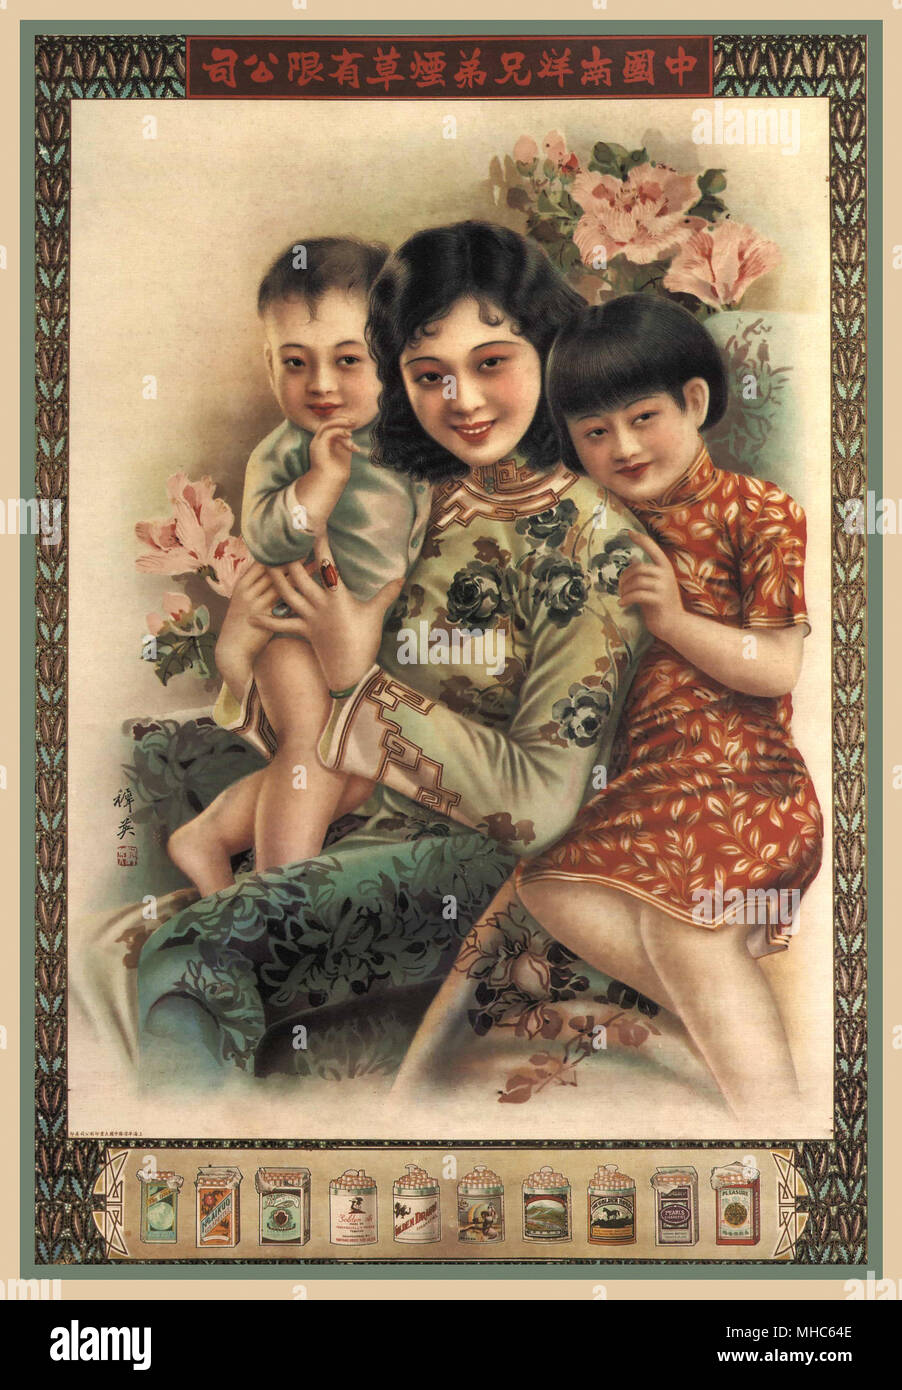 Vintage chinesischen Zigarette Werbeplakat für Nanyang Brüder Tobacco Co vom 1920s Stockfoto